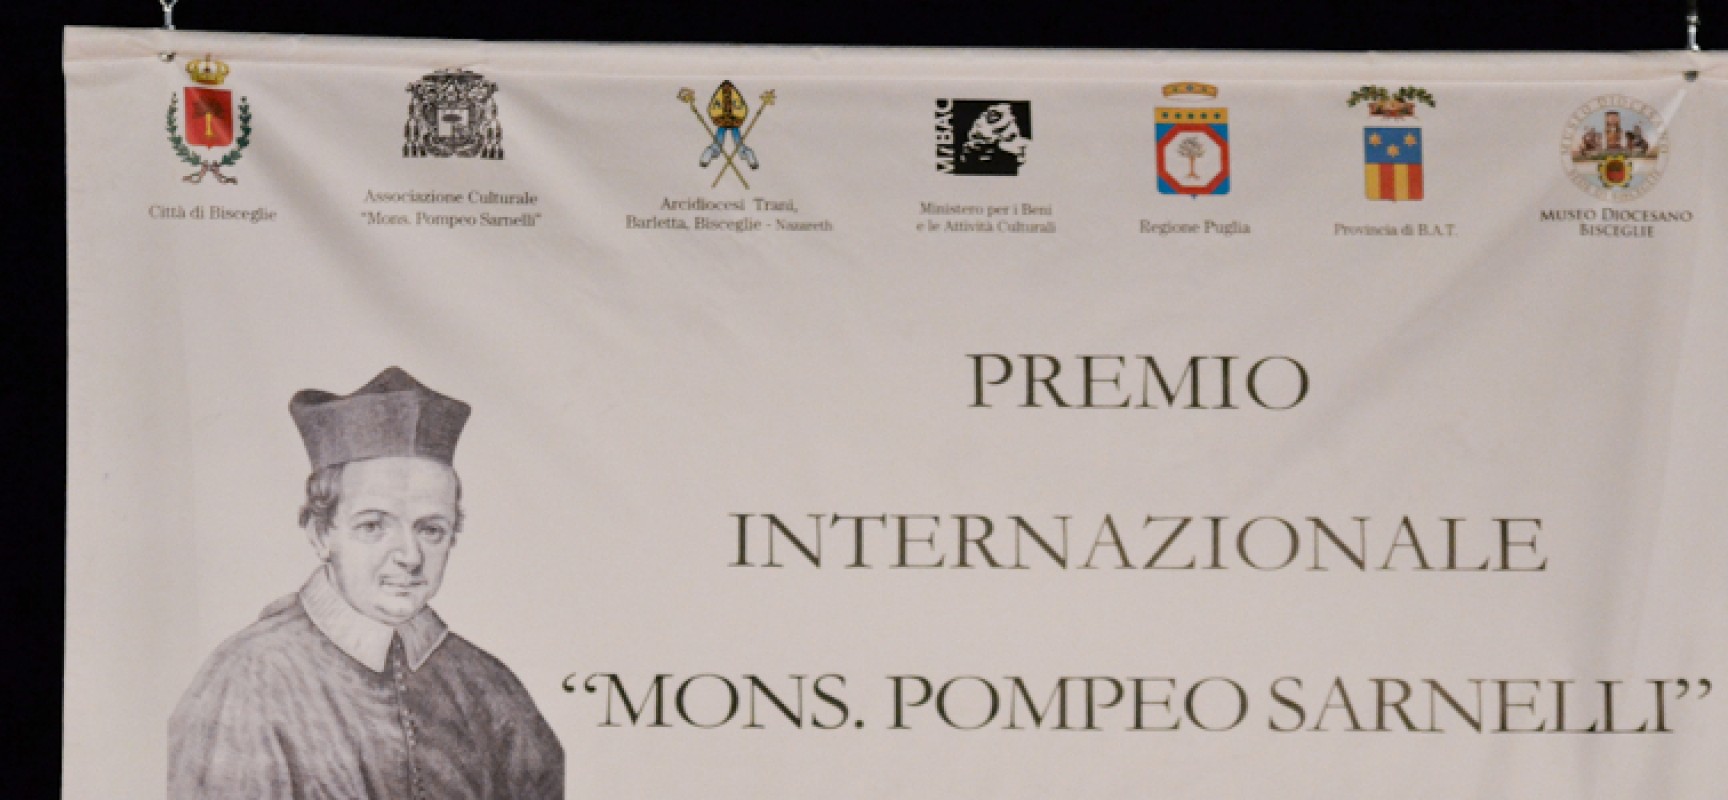 XIII Premio “Mons. Pompeo Sarnelli”, ecco i nomi delle personalità premiate